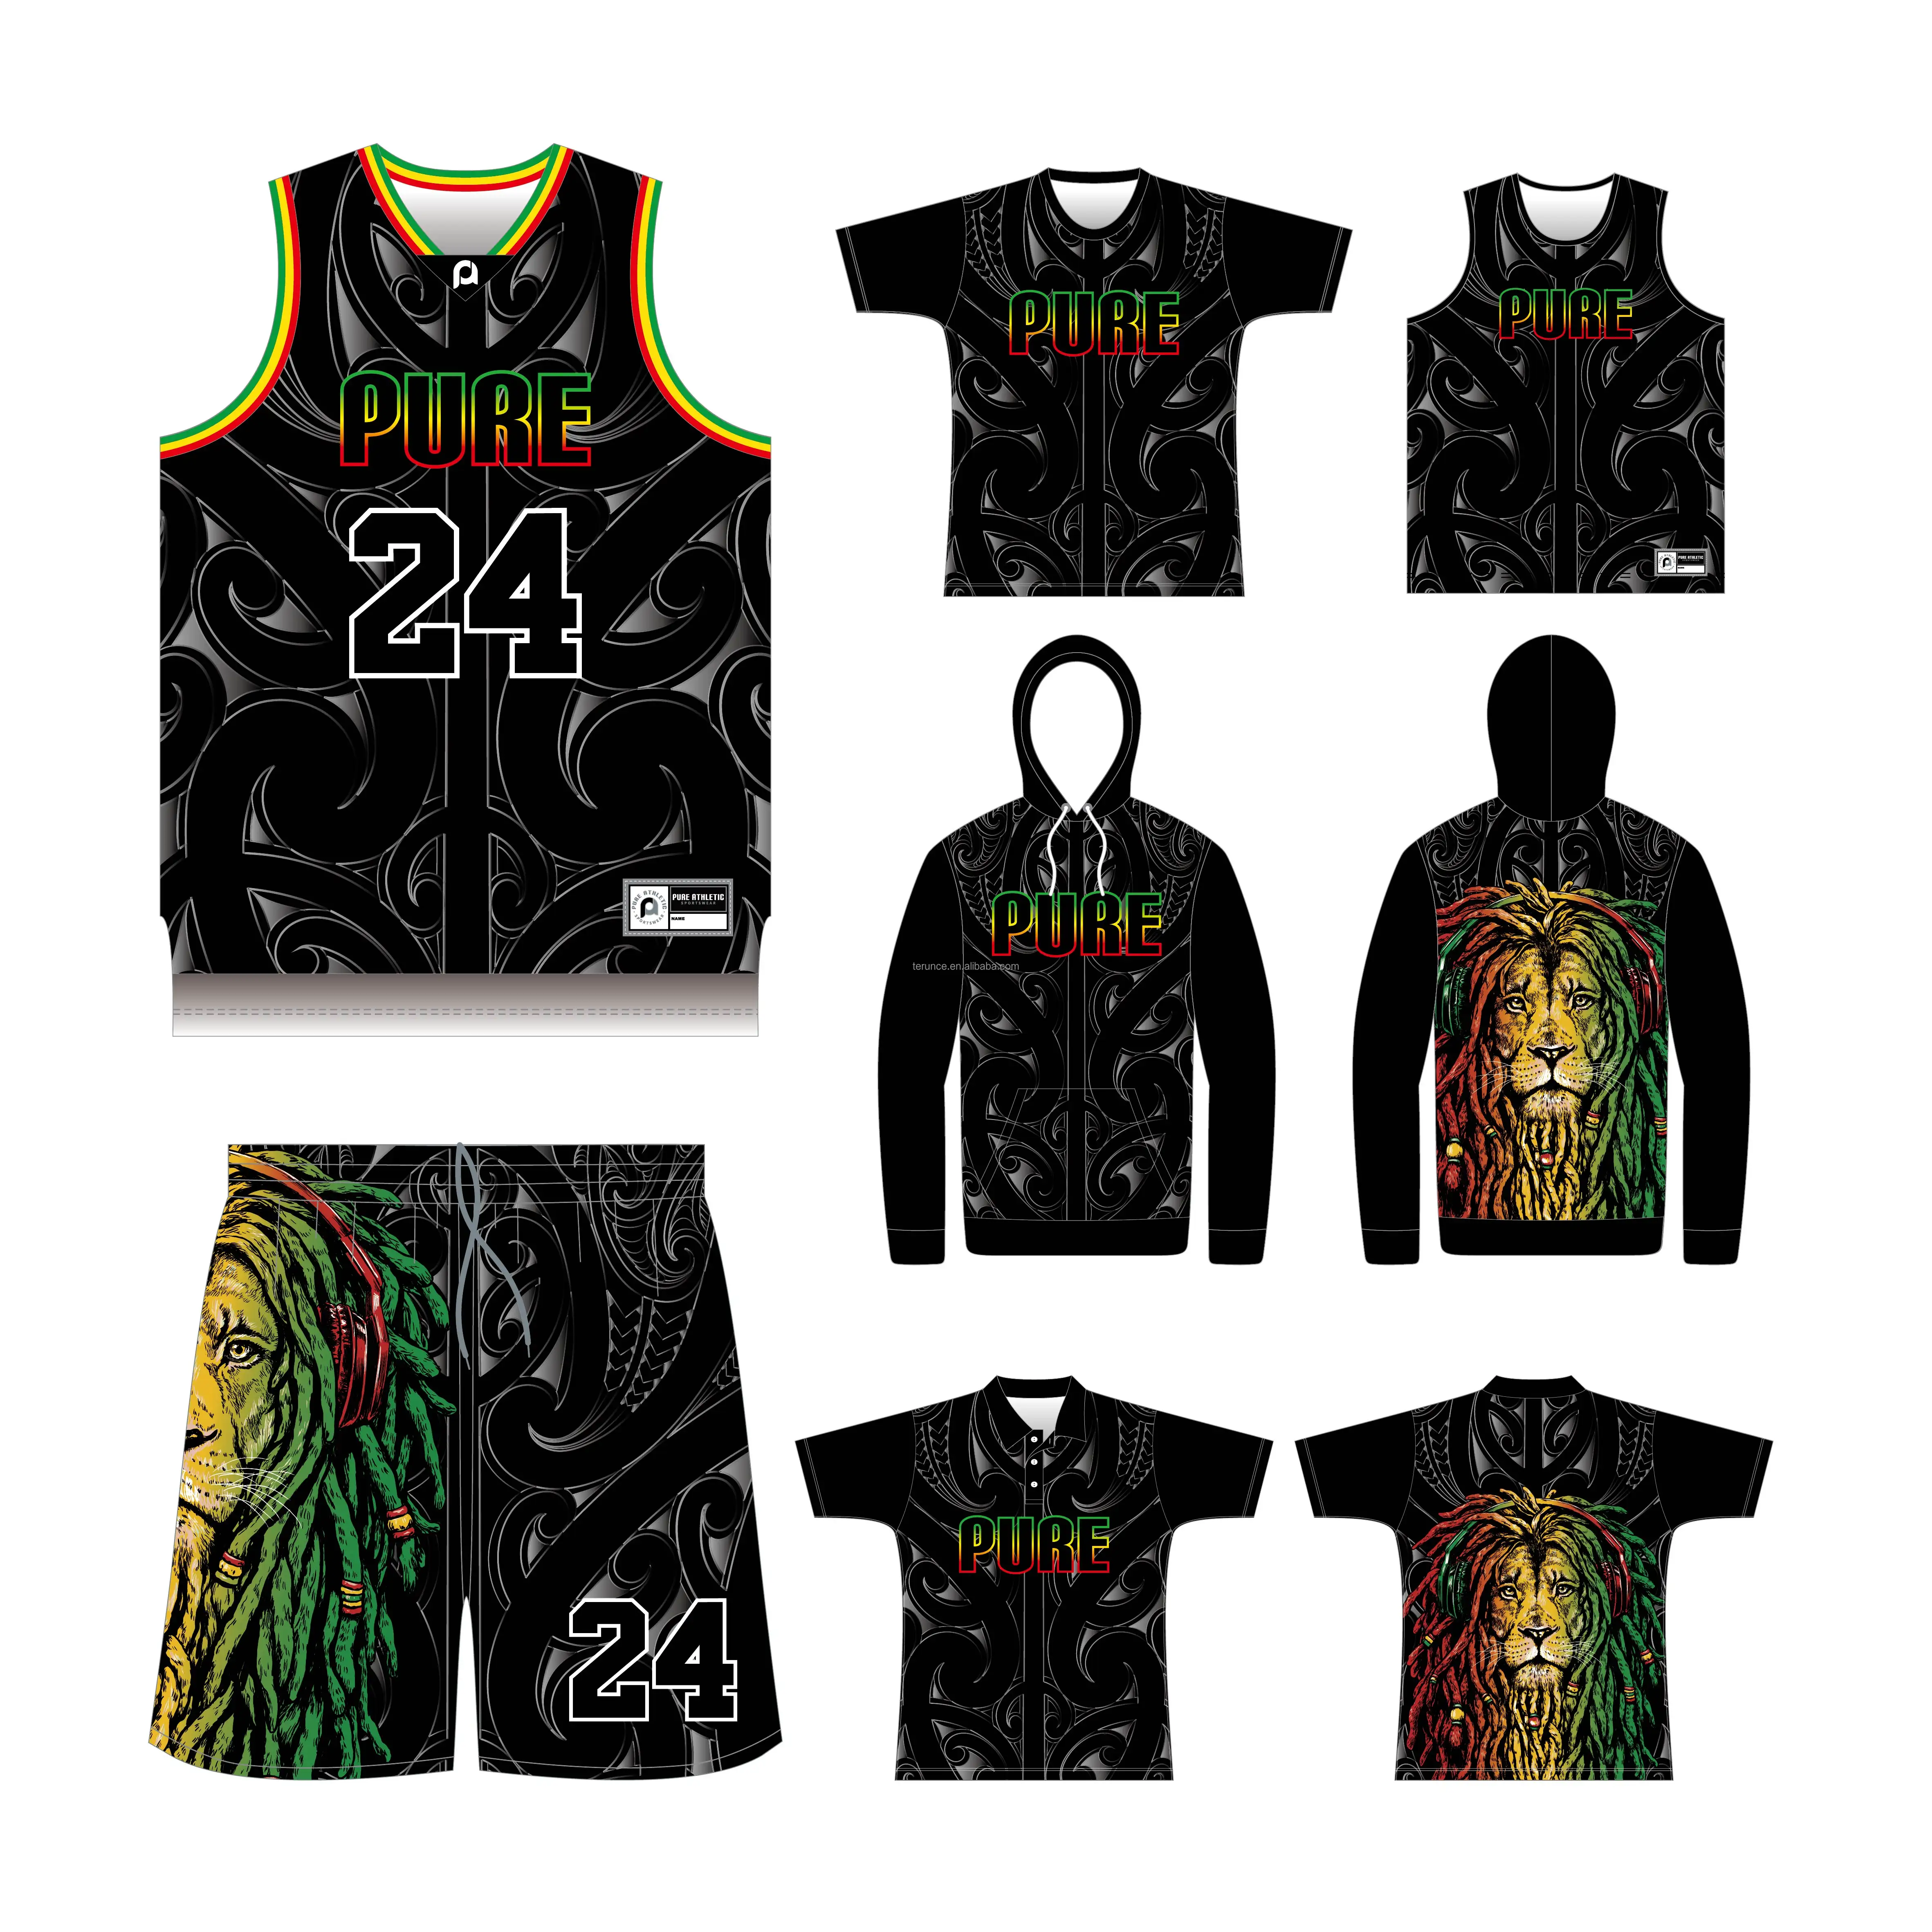 PURE personalizado sublimado AU NZ Rasta baloncesto Jersey diseño Reversible baloncesto camisetas uniformes al por mayor hombres jóvenes